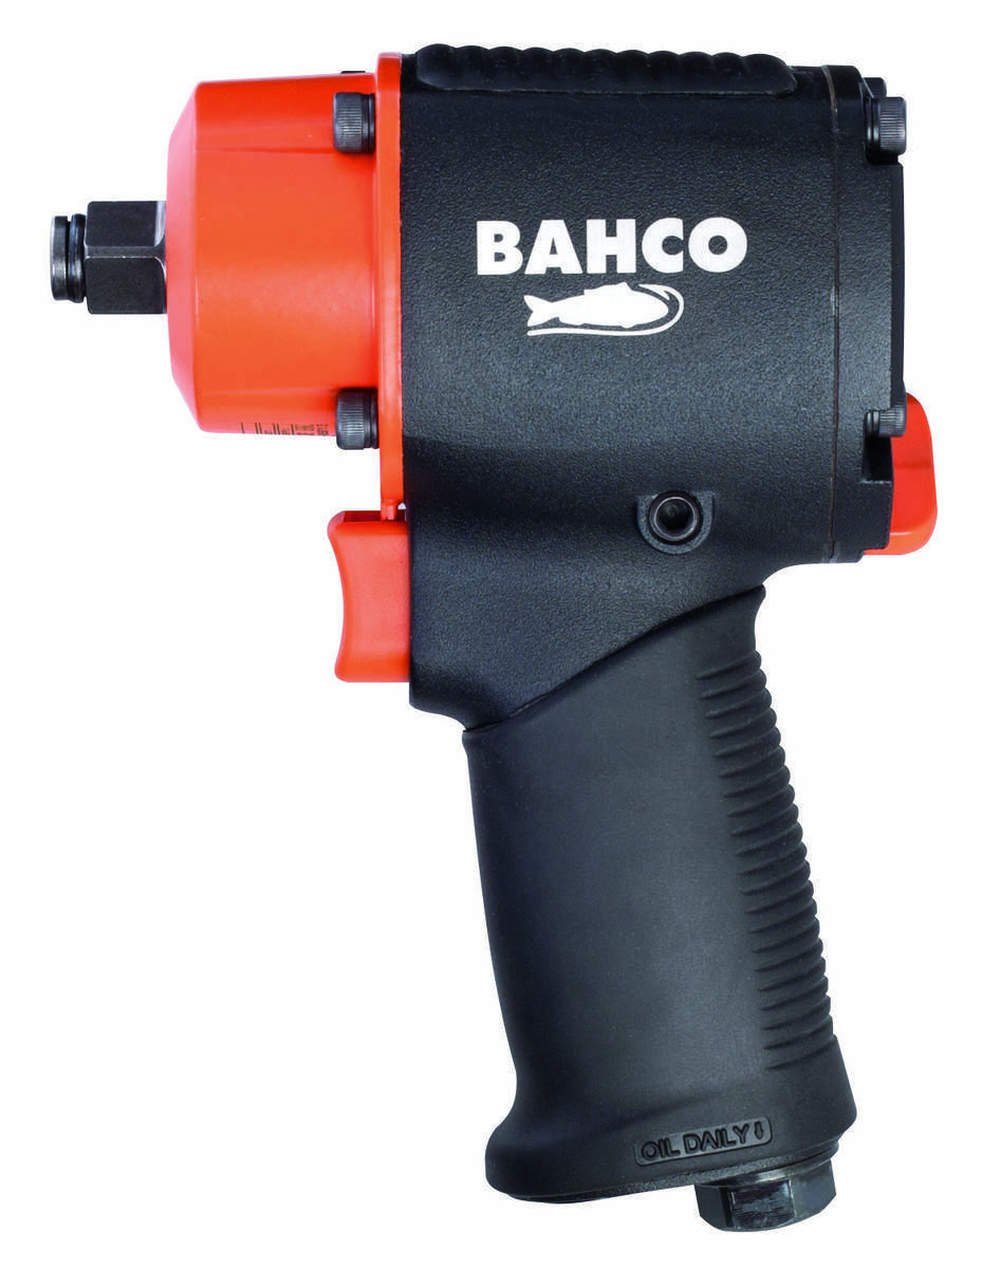 (Solo), 678 BAHCO Rutschfester Druckluft-Schlagschrauber Doppelhammer-Schlagwerk, U/min, BPC813, 10000 Nm, Gummigriff